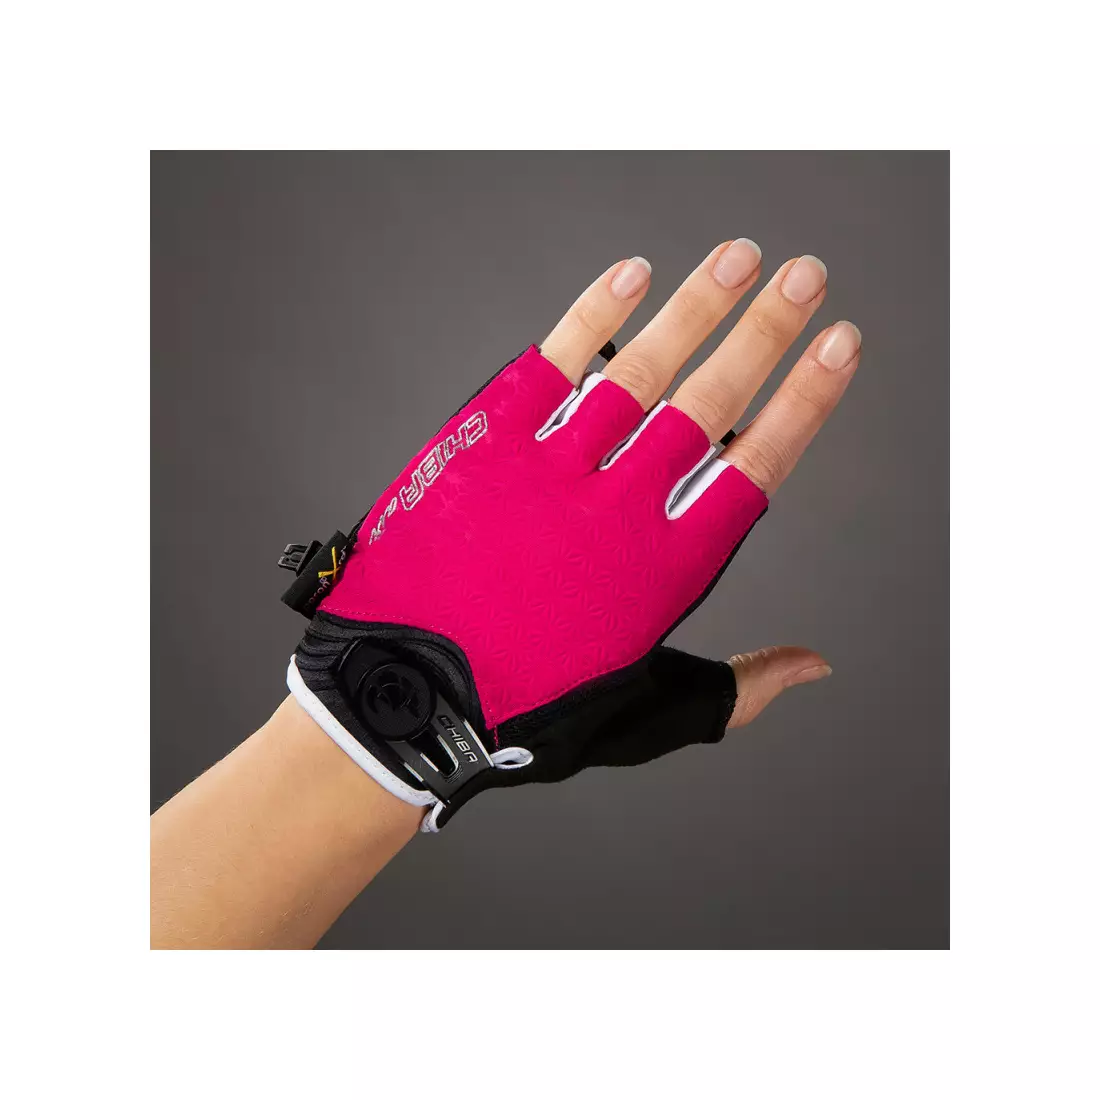 CHIBA LADY AIR PLUS mănuși de ciclism pentru femei, roz